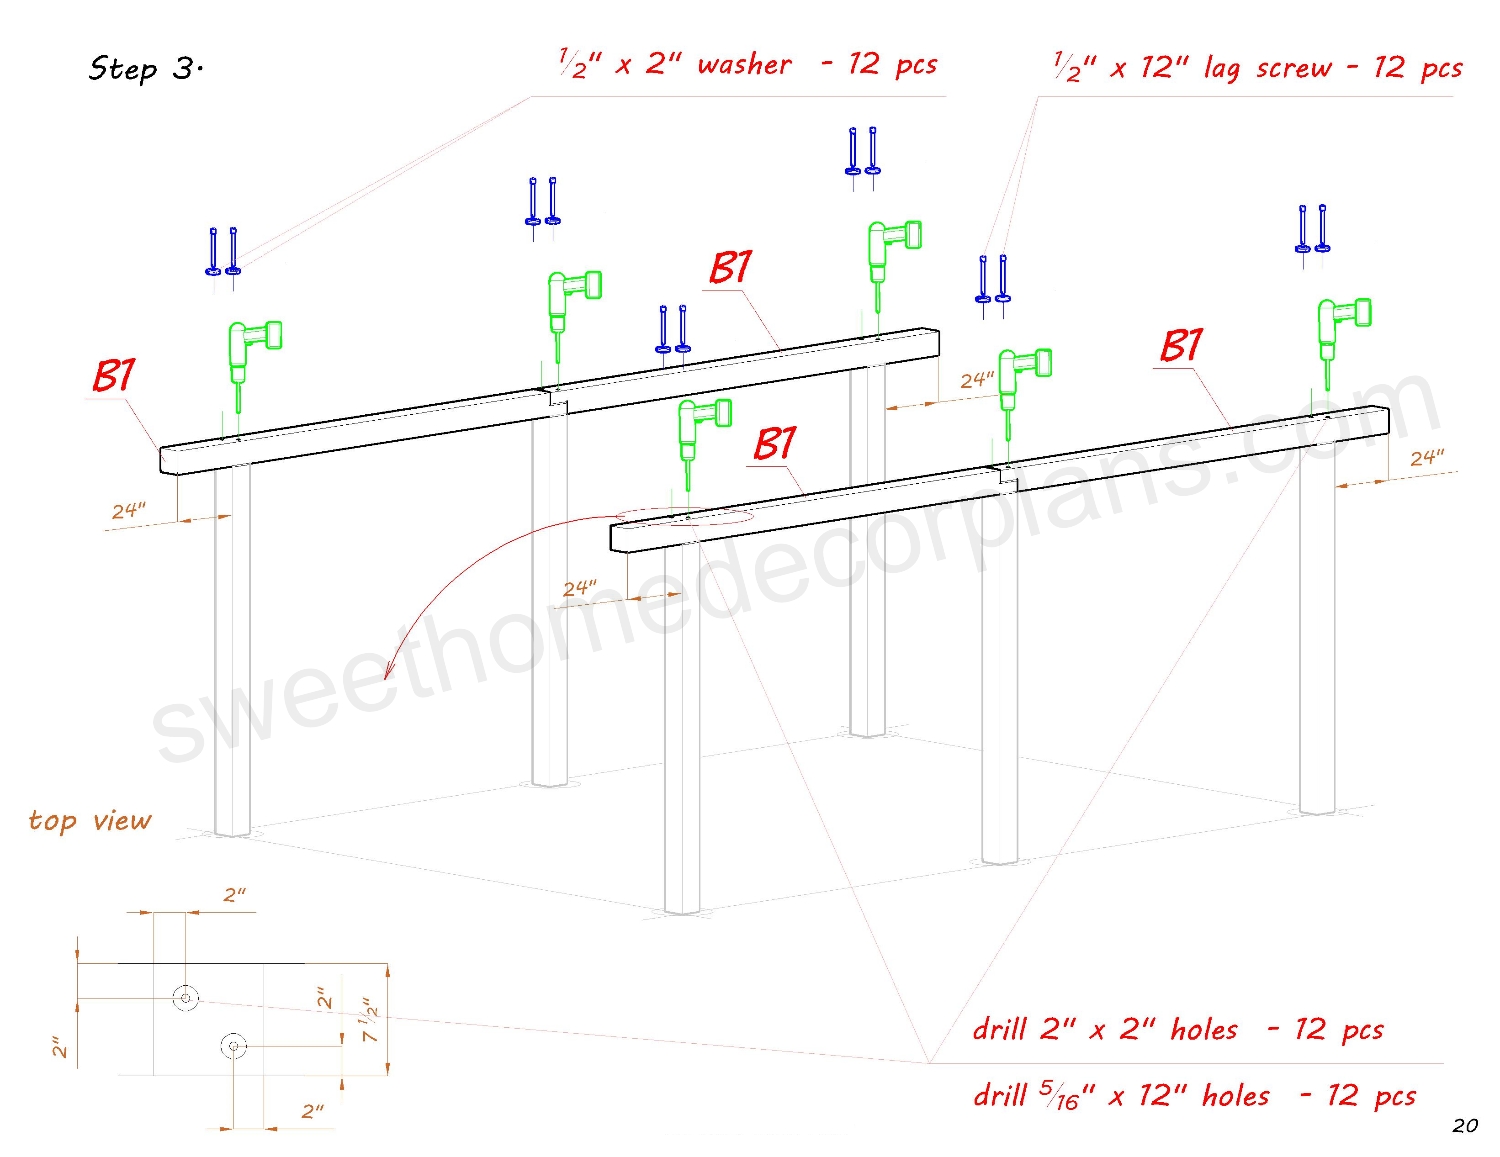 assembly-diagram-wooden-18-х-24-gable-pavilion-plans-in-pdf